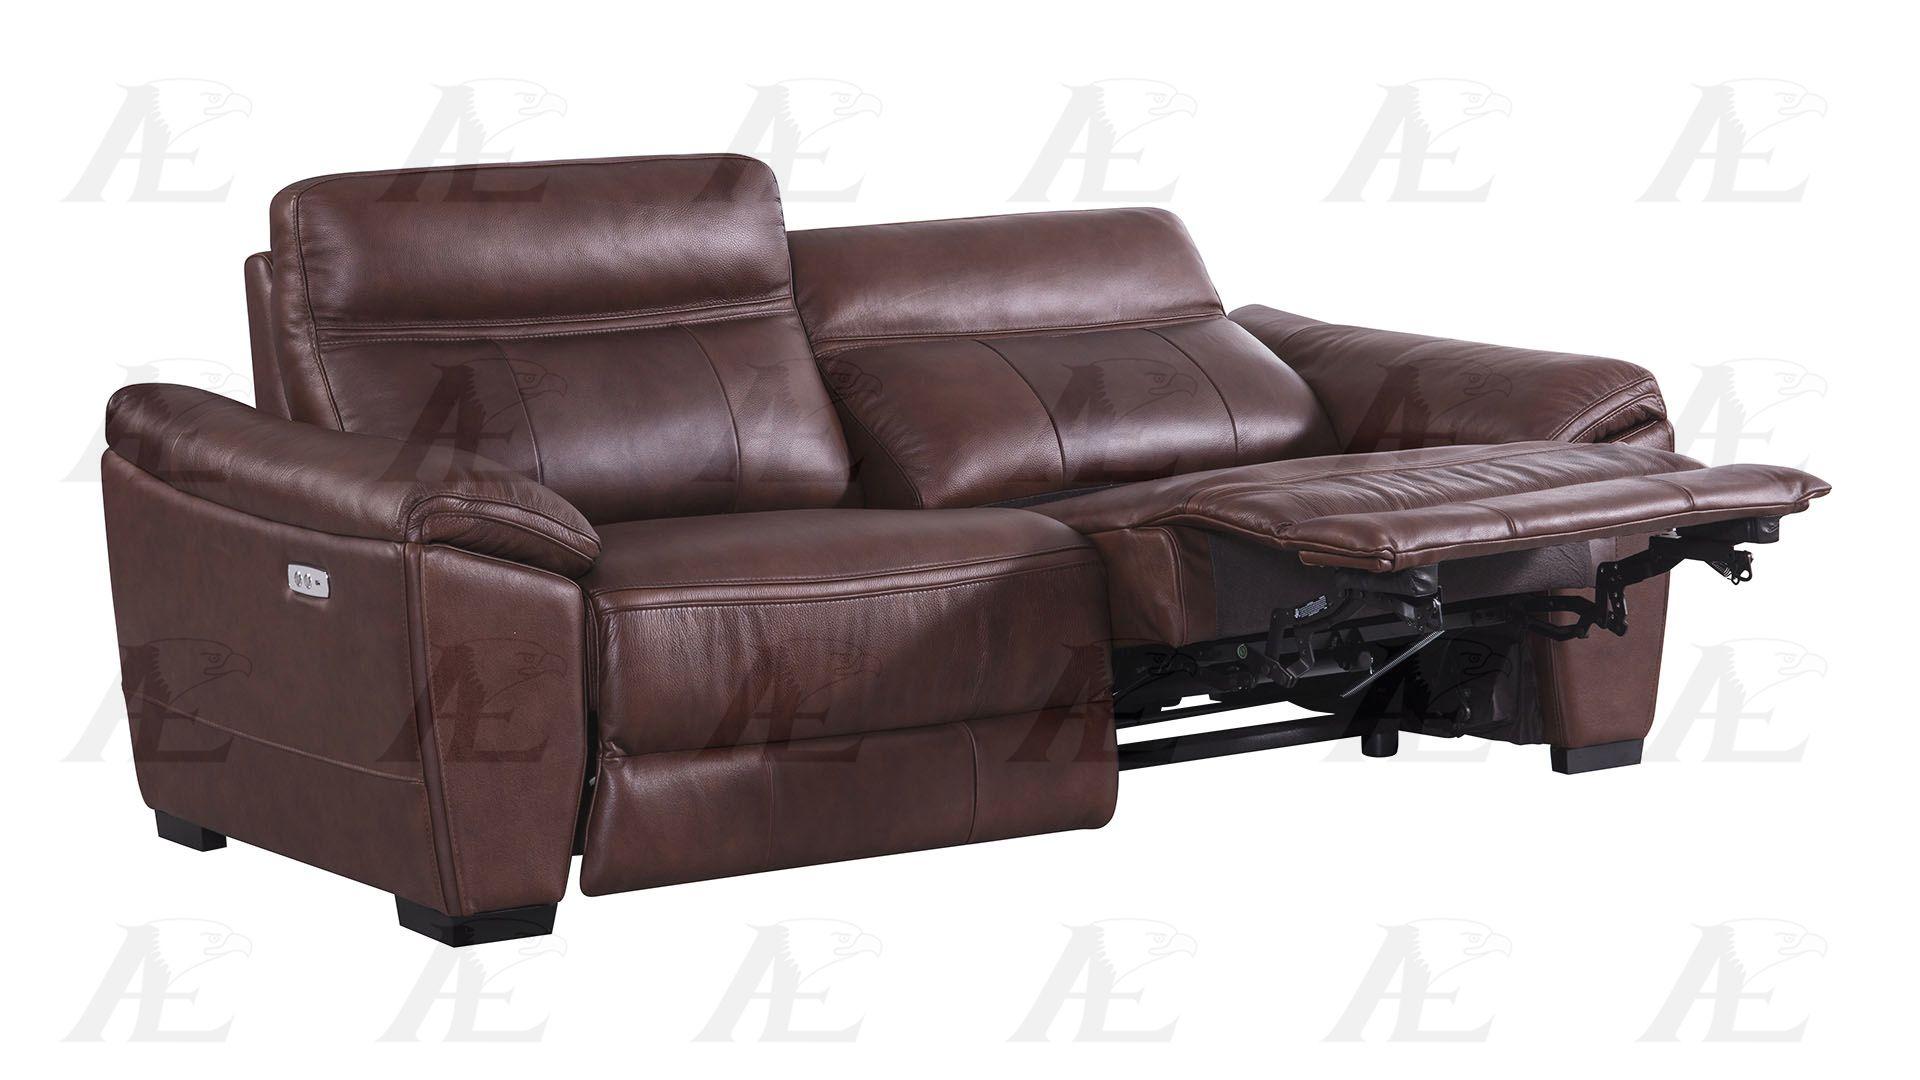 

    
American Eagle Furniture EK088-BR Reclining Sofa Brown EK088-BR-SF
